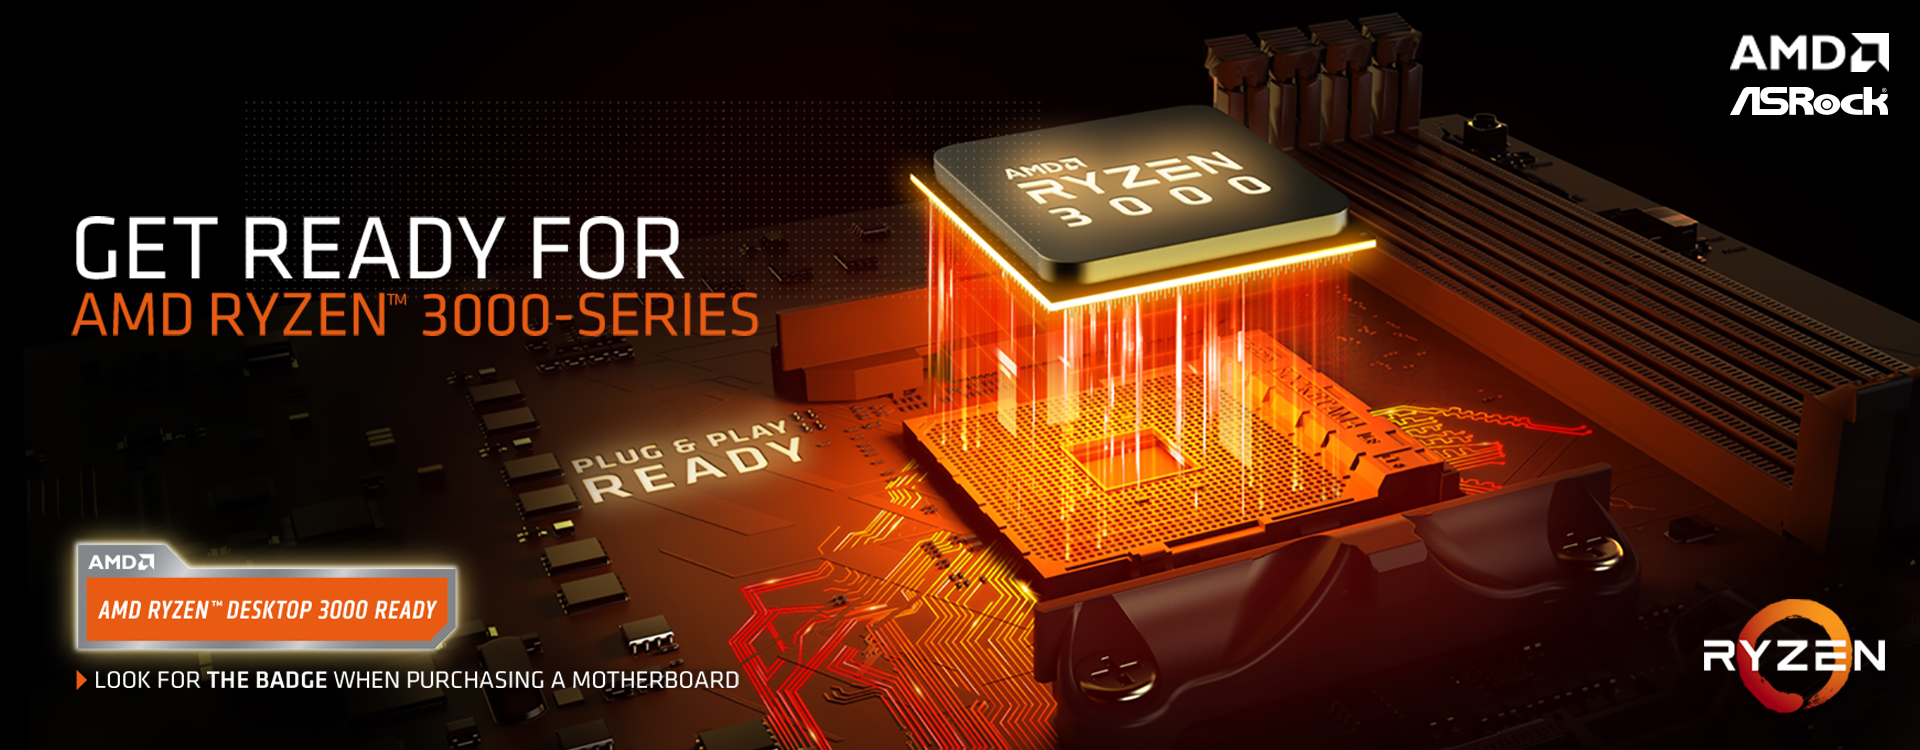 AMD Ryzen 3000 Series Banner